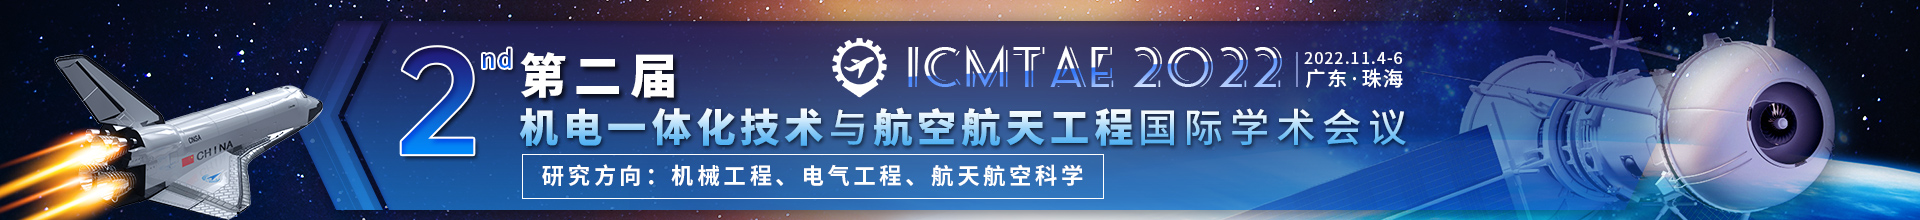 11月珠海-ICMTAE-学术会议云-尹旭舟20220426.jpg